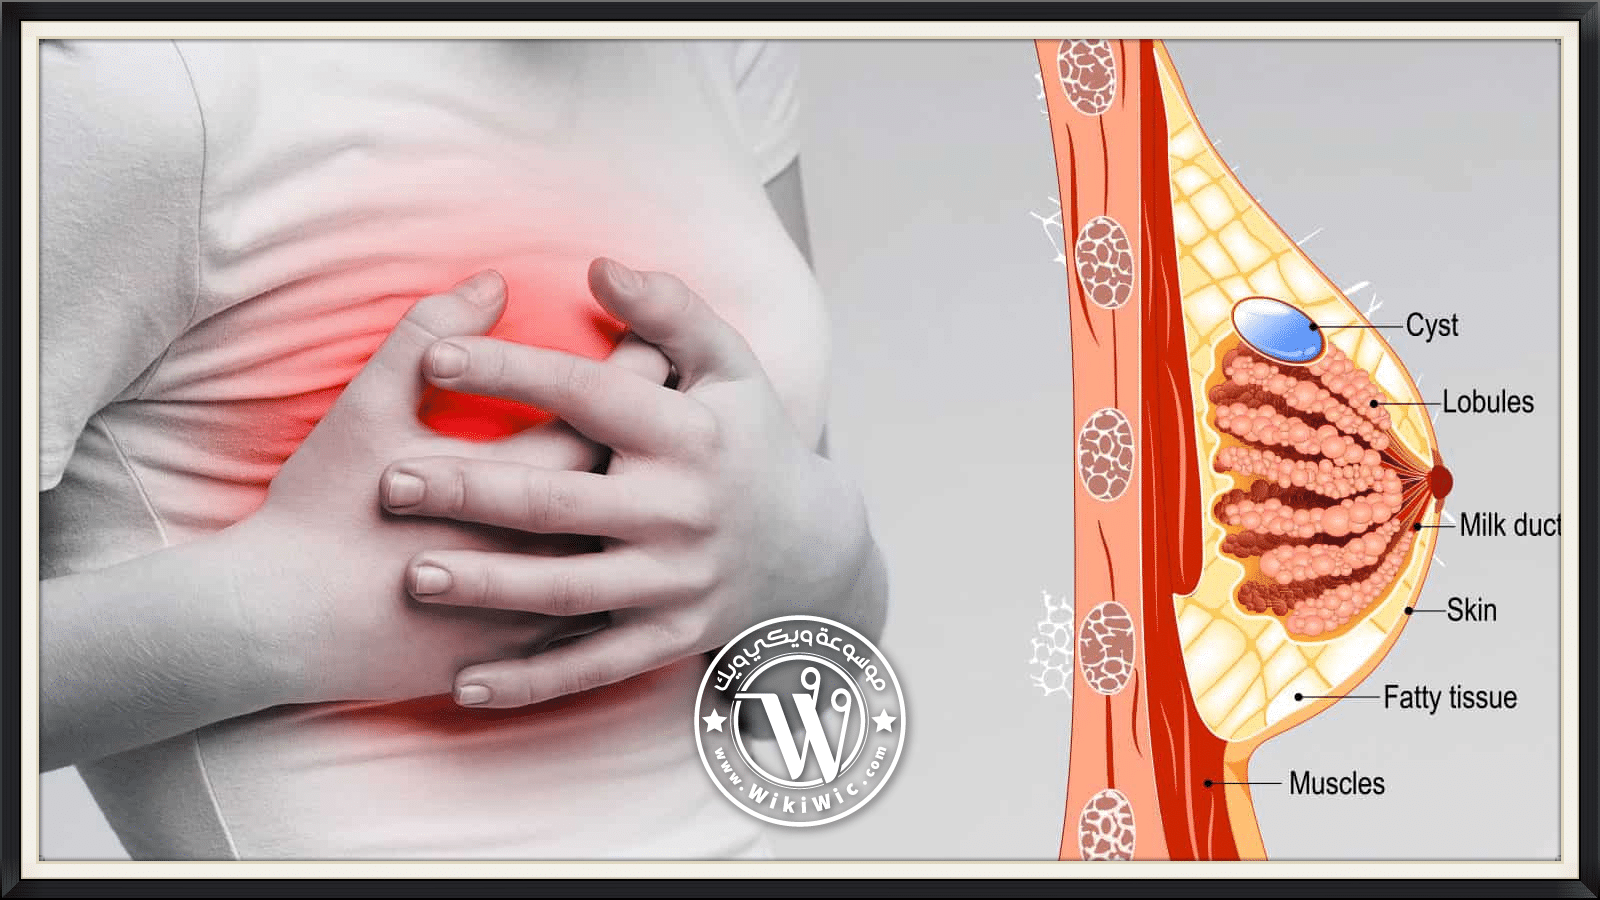 كيف يكون ألم الثدي في بداية الحمل لماذا يحدث ألم الثدي بداية الحمل Wiki Wic ويكي ويك